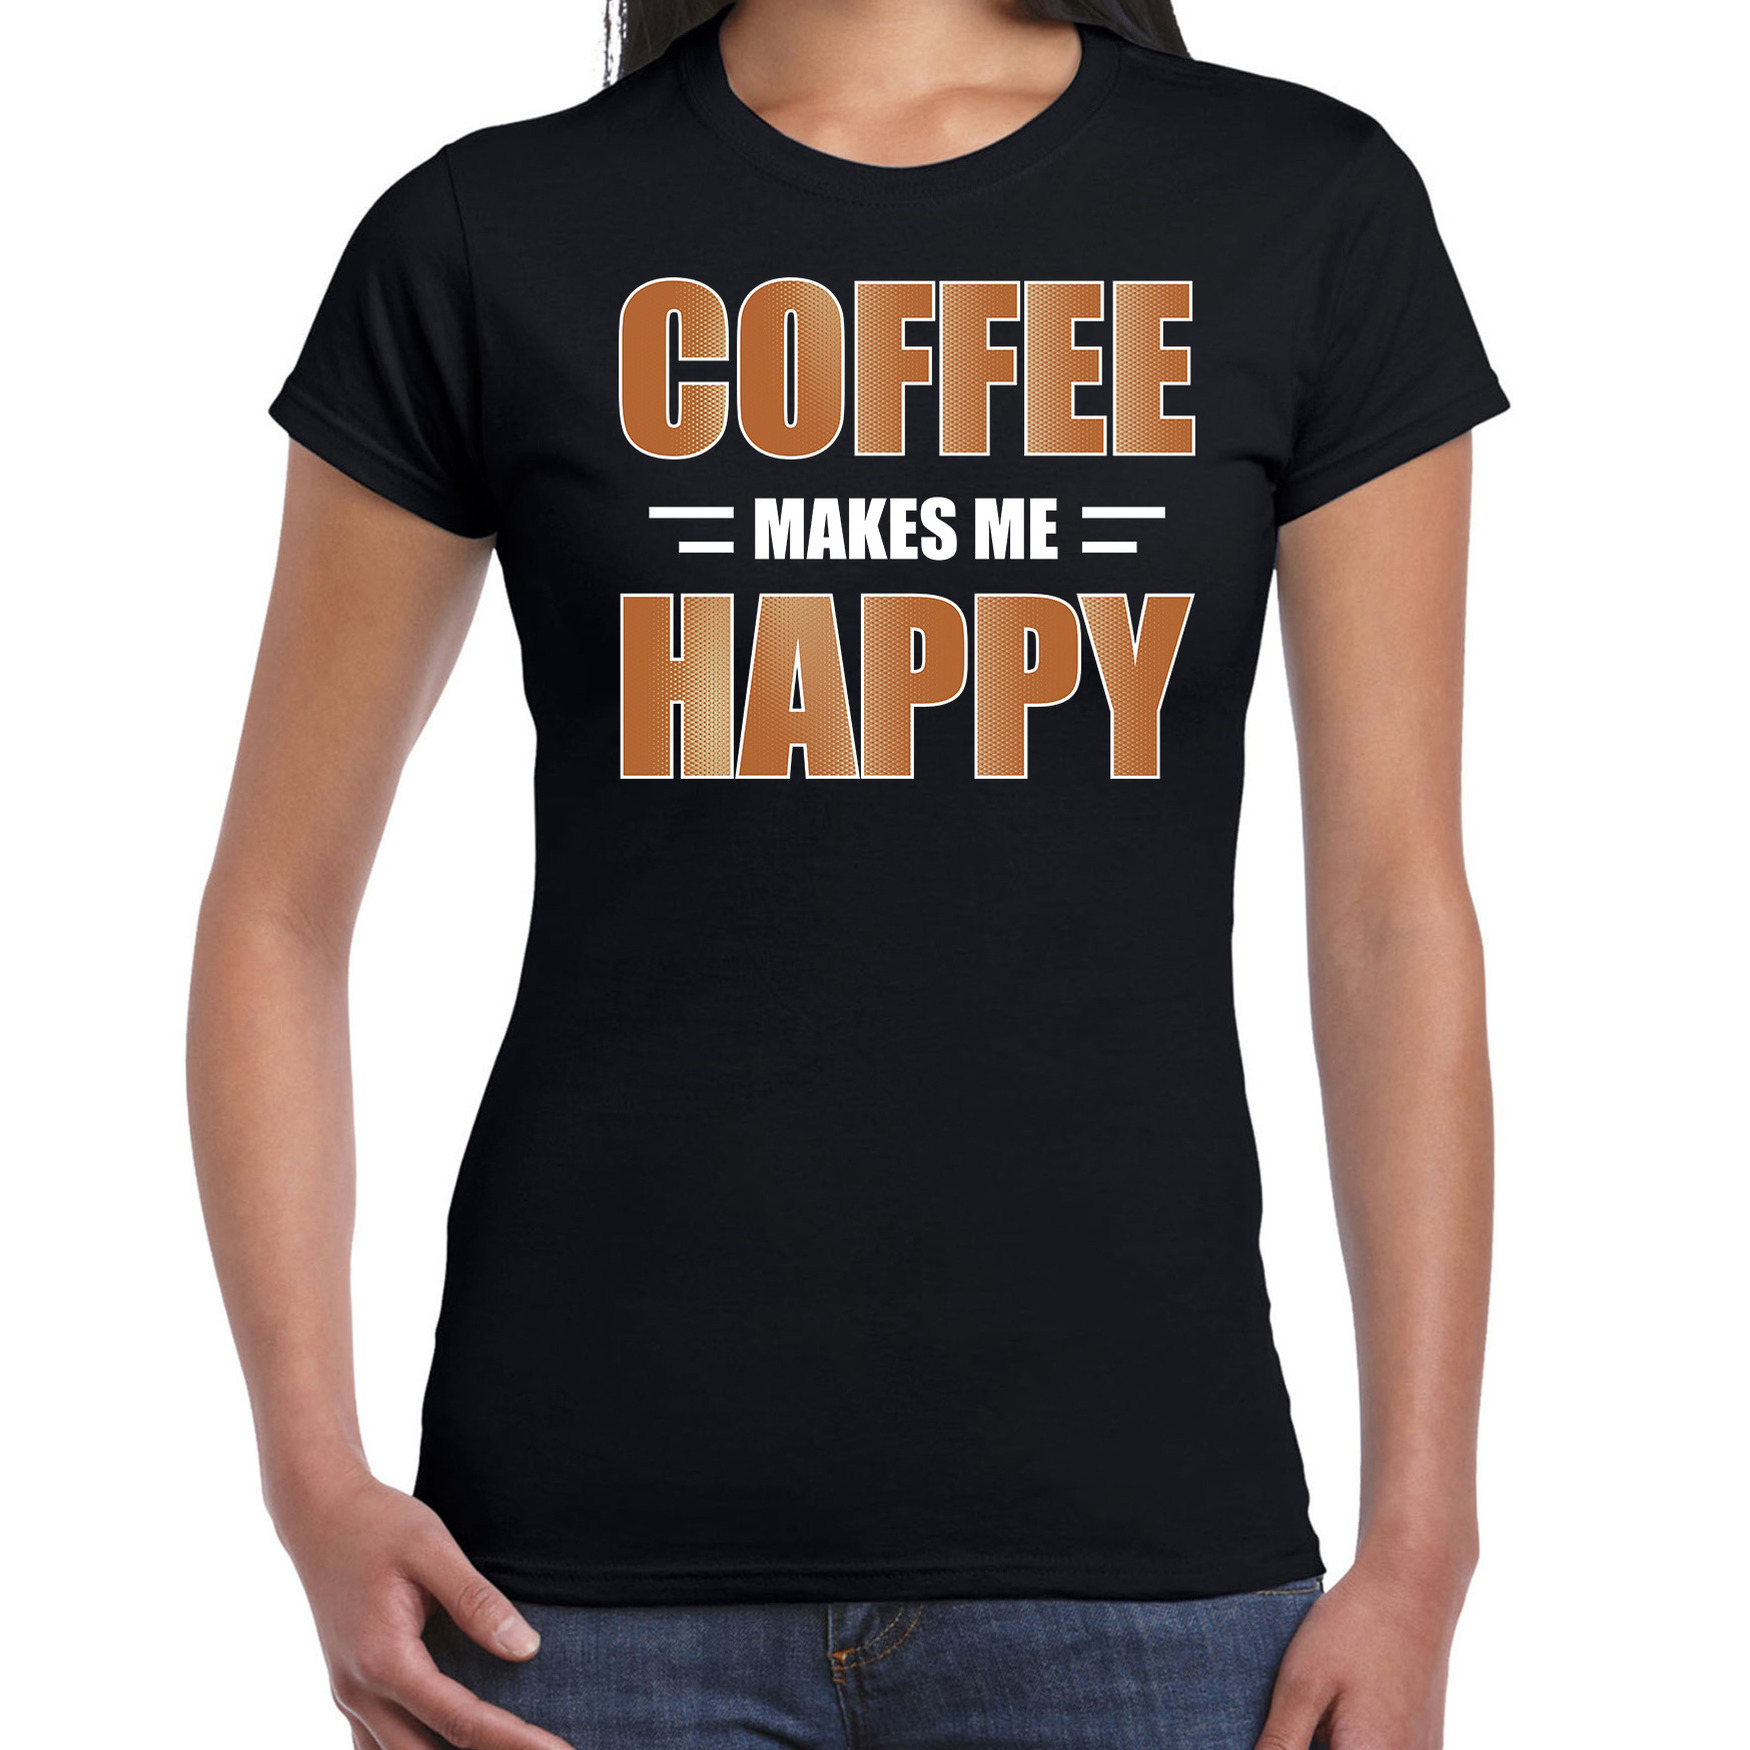 Coffee makes me happy t-shirt-kleding zwart voor dames